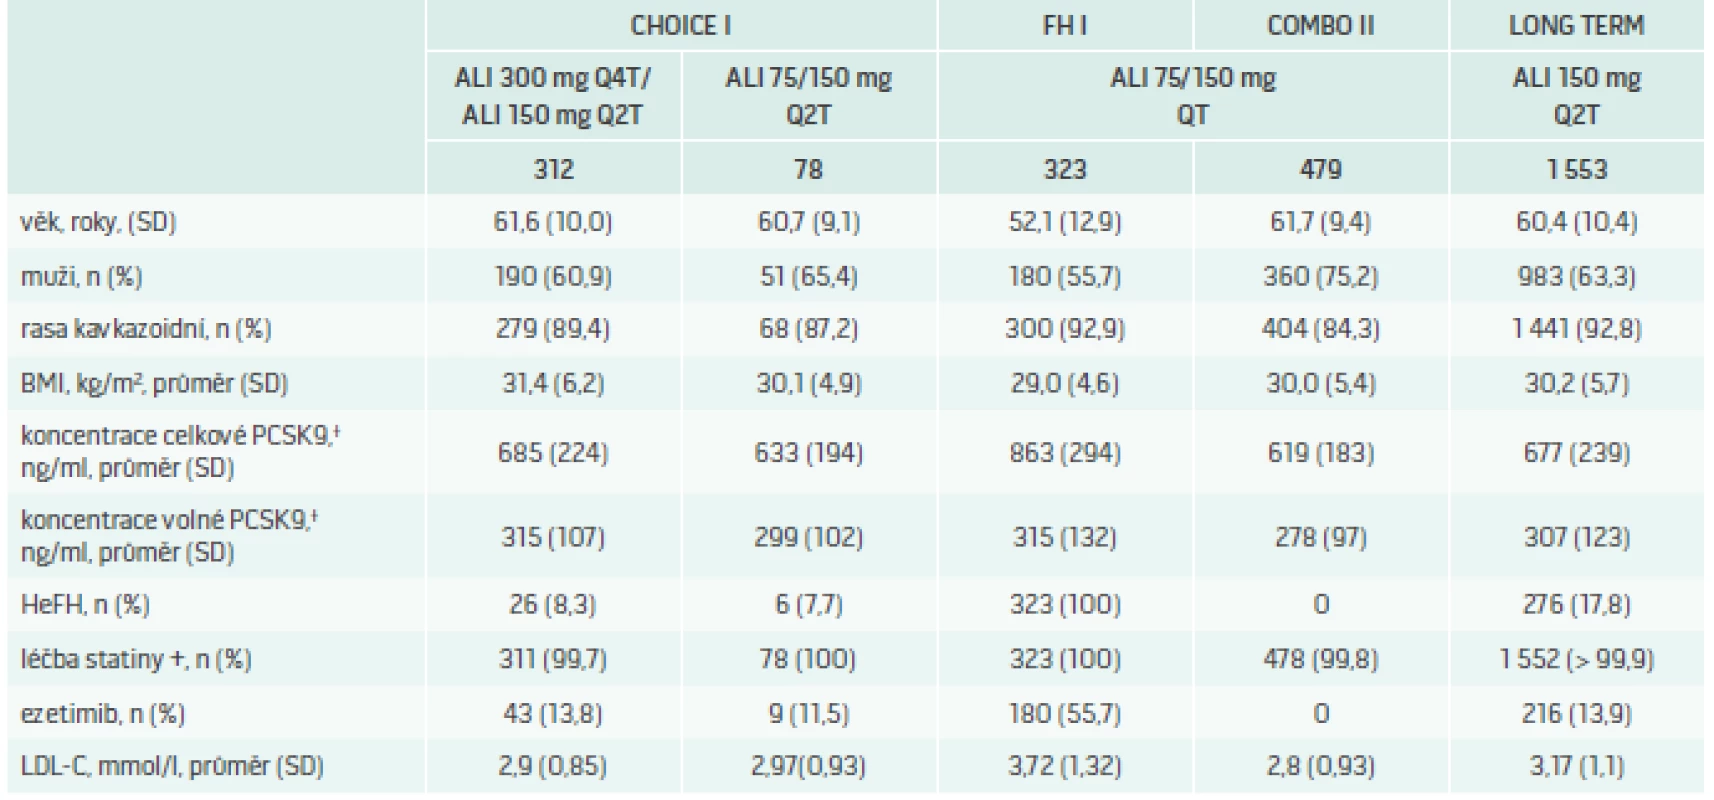 Vstupní charakteristika pacientů ve studii CHOICE I: srovnání s populacemi studií ODYSSEY FH I,  OMBO II a LONG TERM